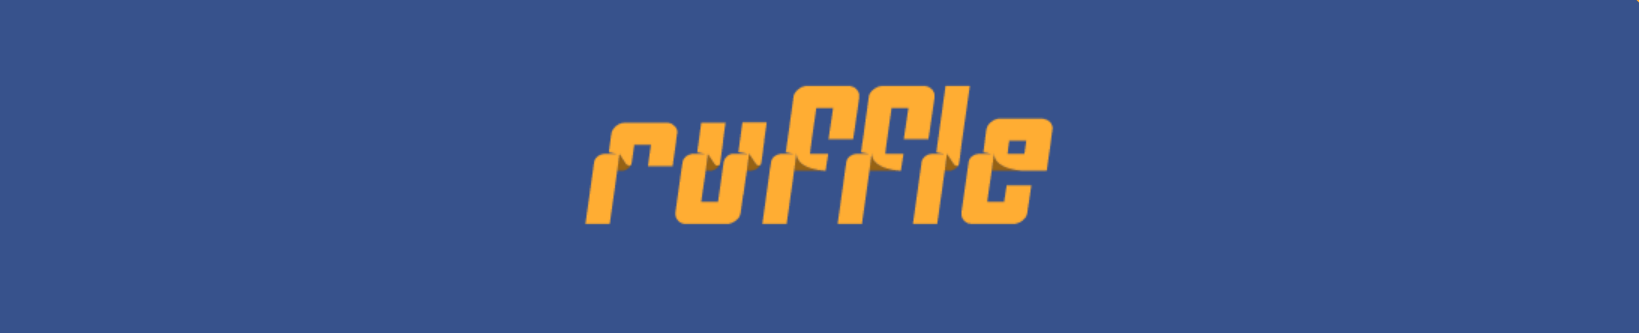 Ruffle logo